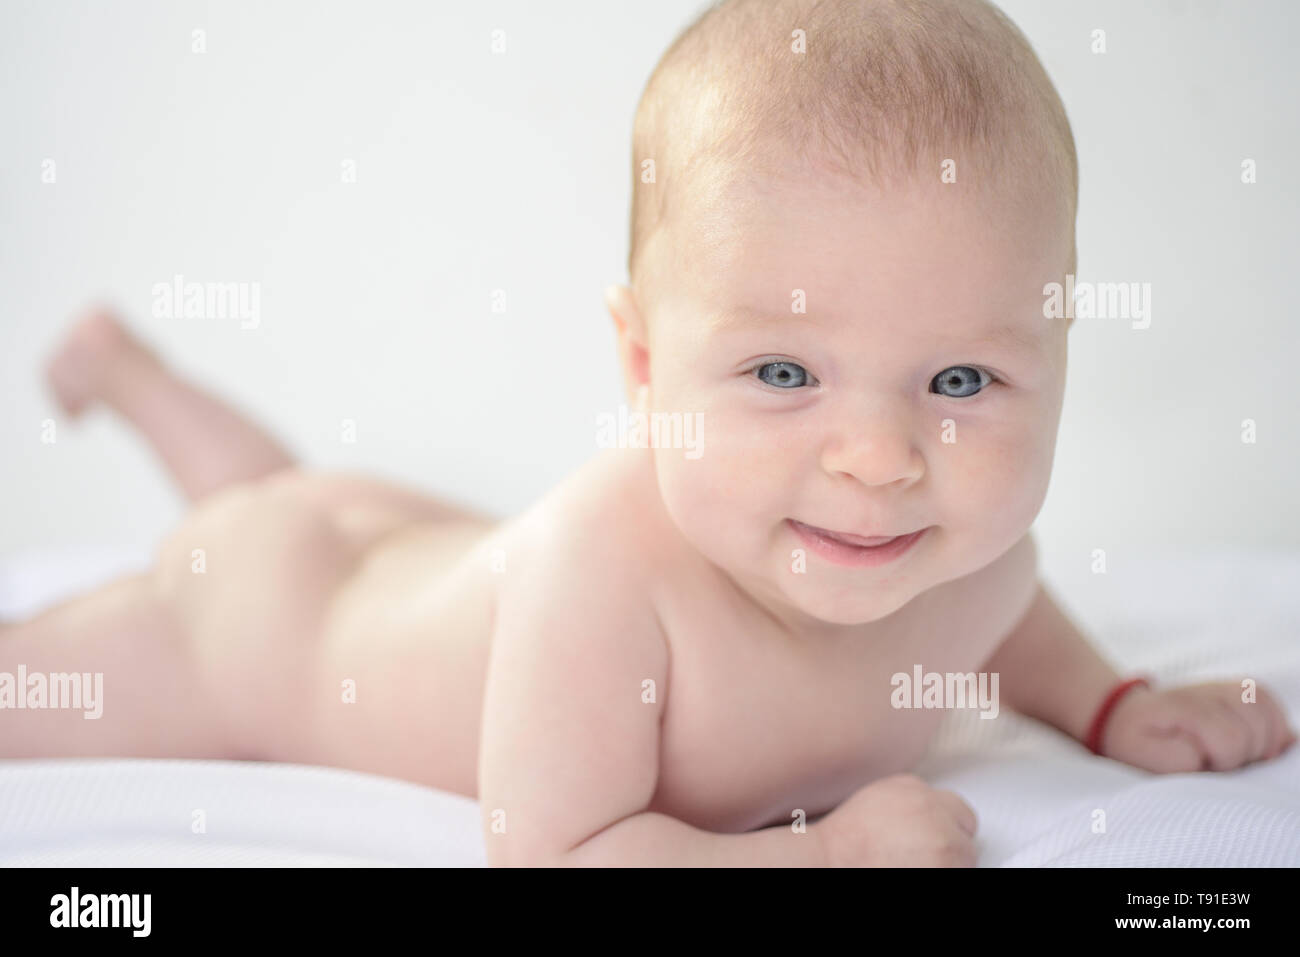 Heureux bébé nouveau-né sourire. Le nouveau-né, happy smiling. Soins de santé pour bébé heureux. Heureux bébé fille ou garçon. Du vrai bon soin du bébé Banque D'Images